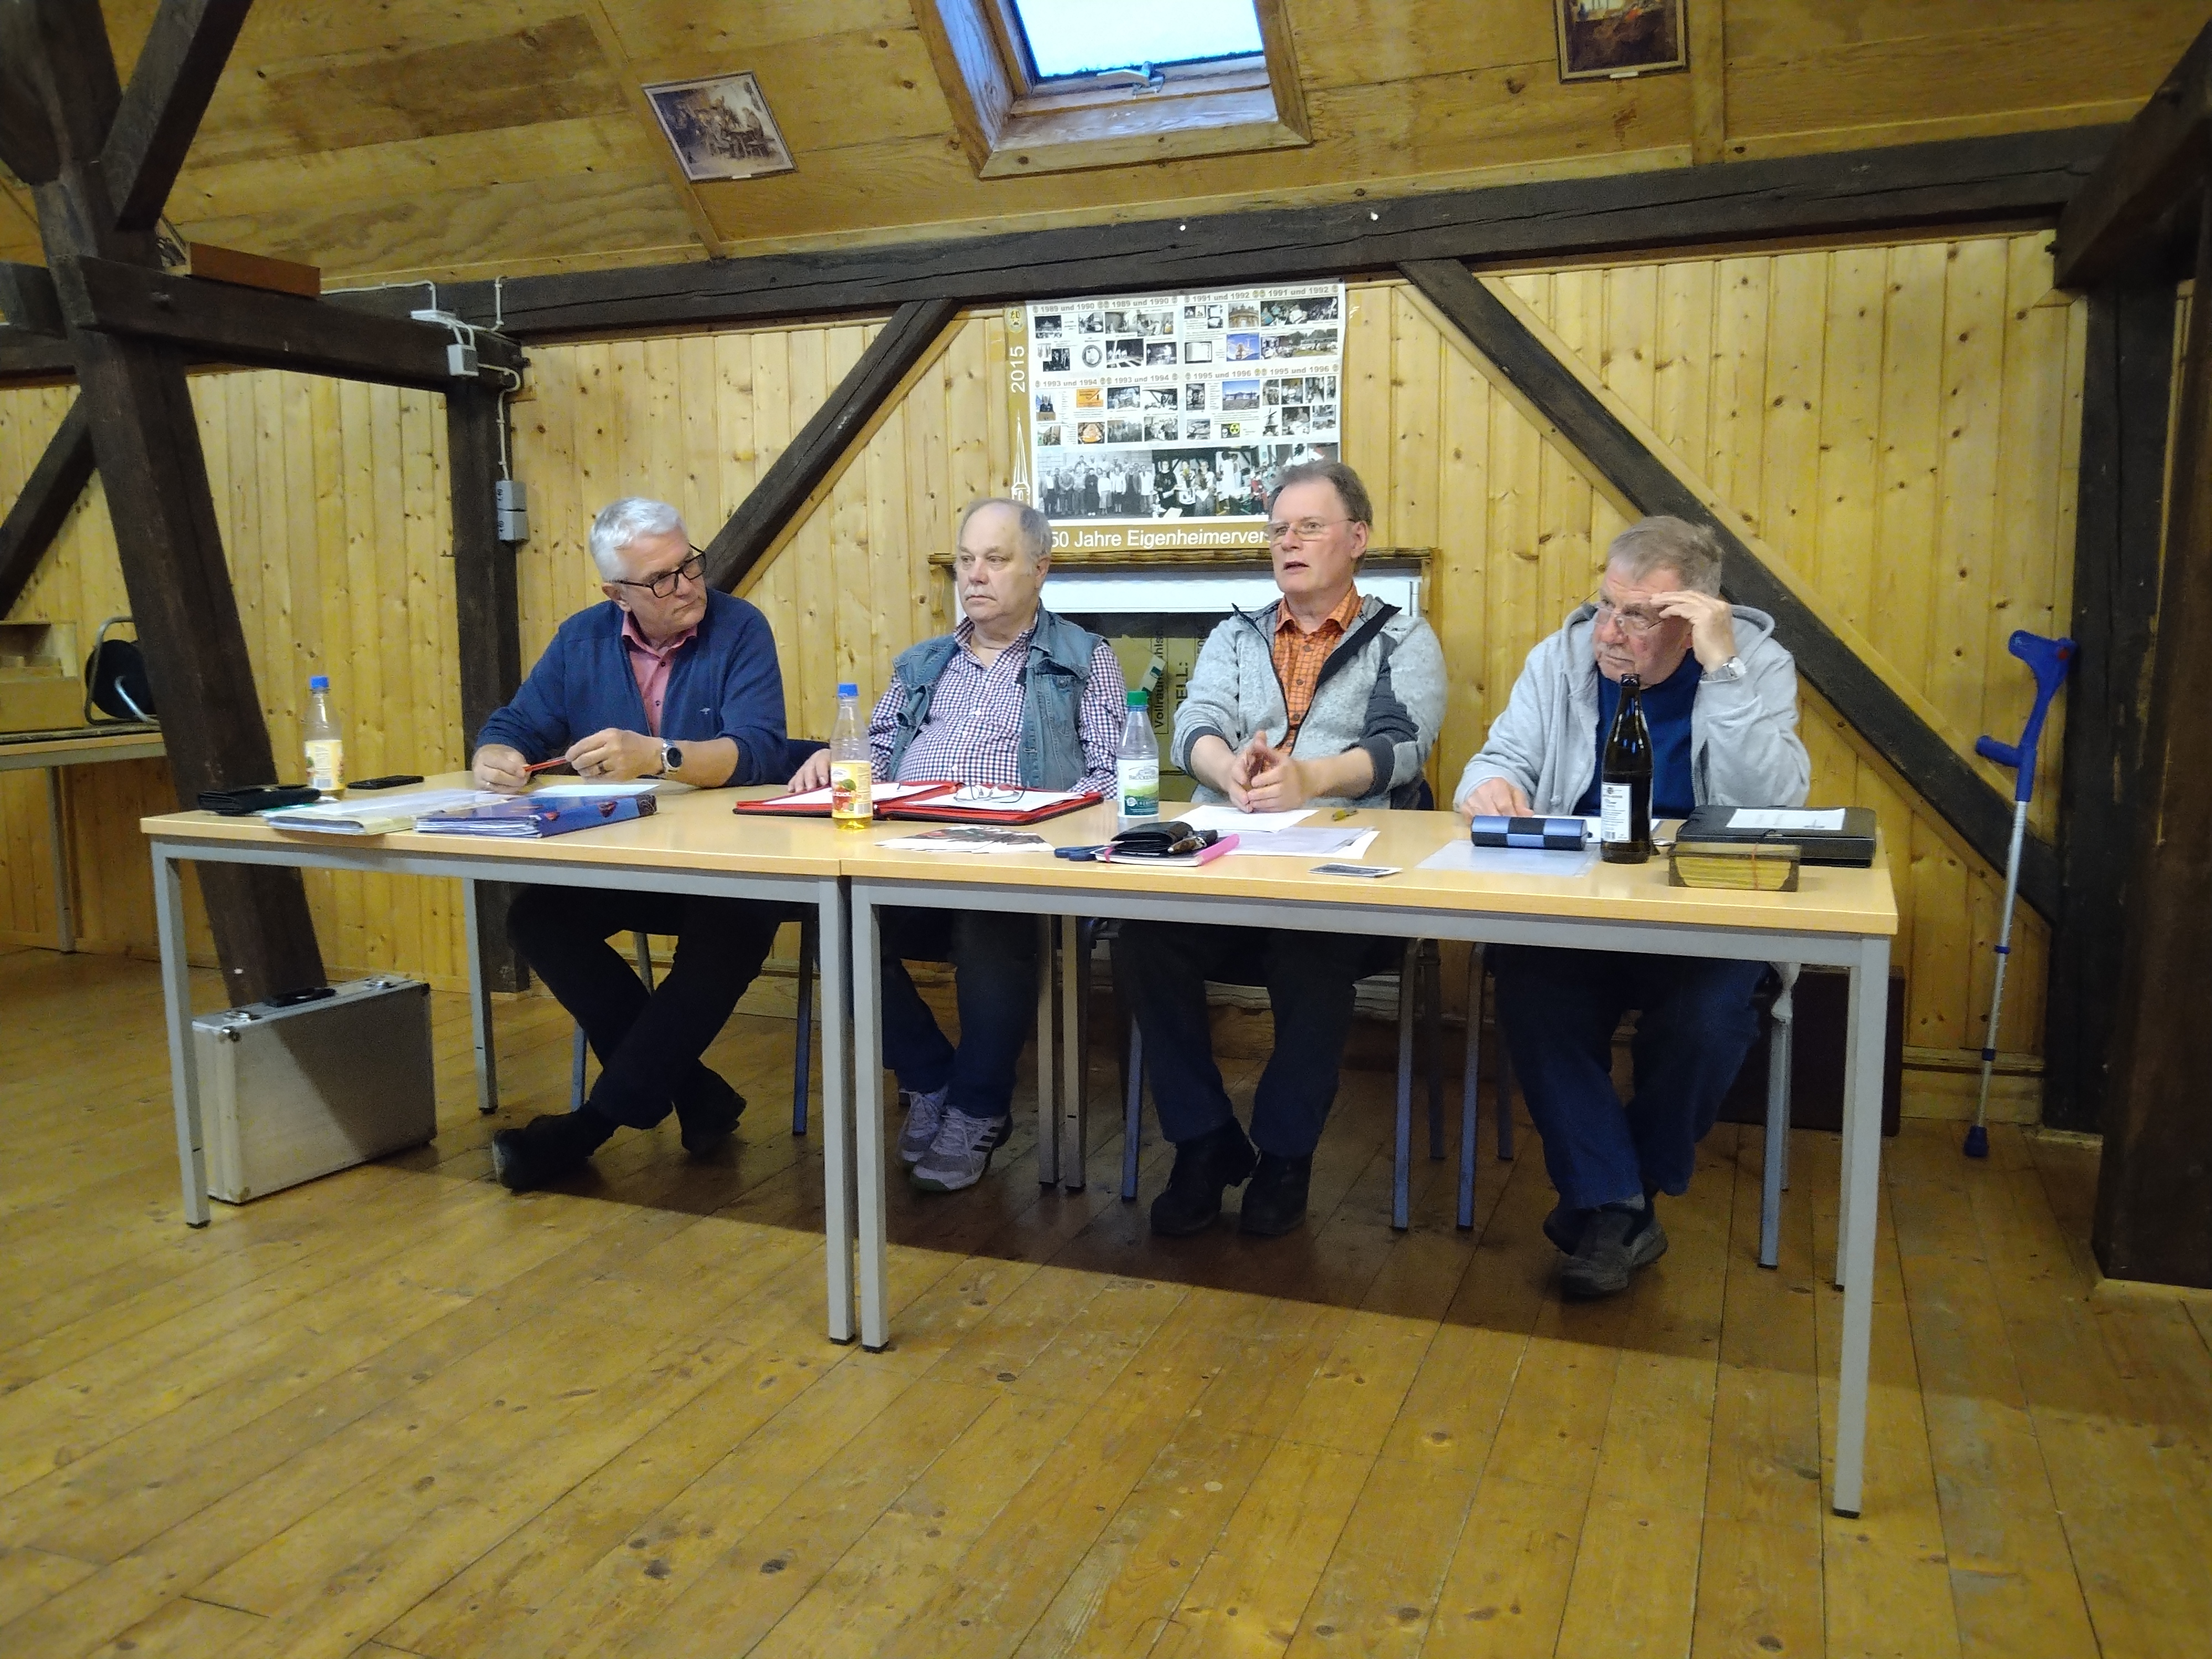 Vorstände des Vereins von links: Thomas Stanjek (Kassier), Karl-Heinz Stab (Schriftführer), Helmut Werthmann (Vorstand), Karl-Heinz Rummel (Vorstand)